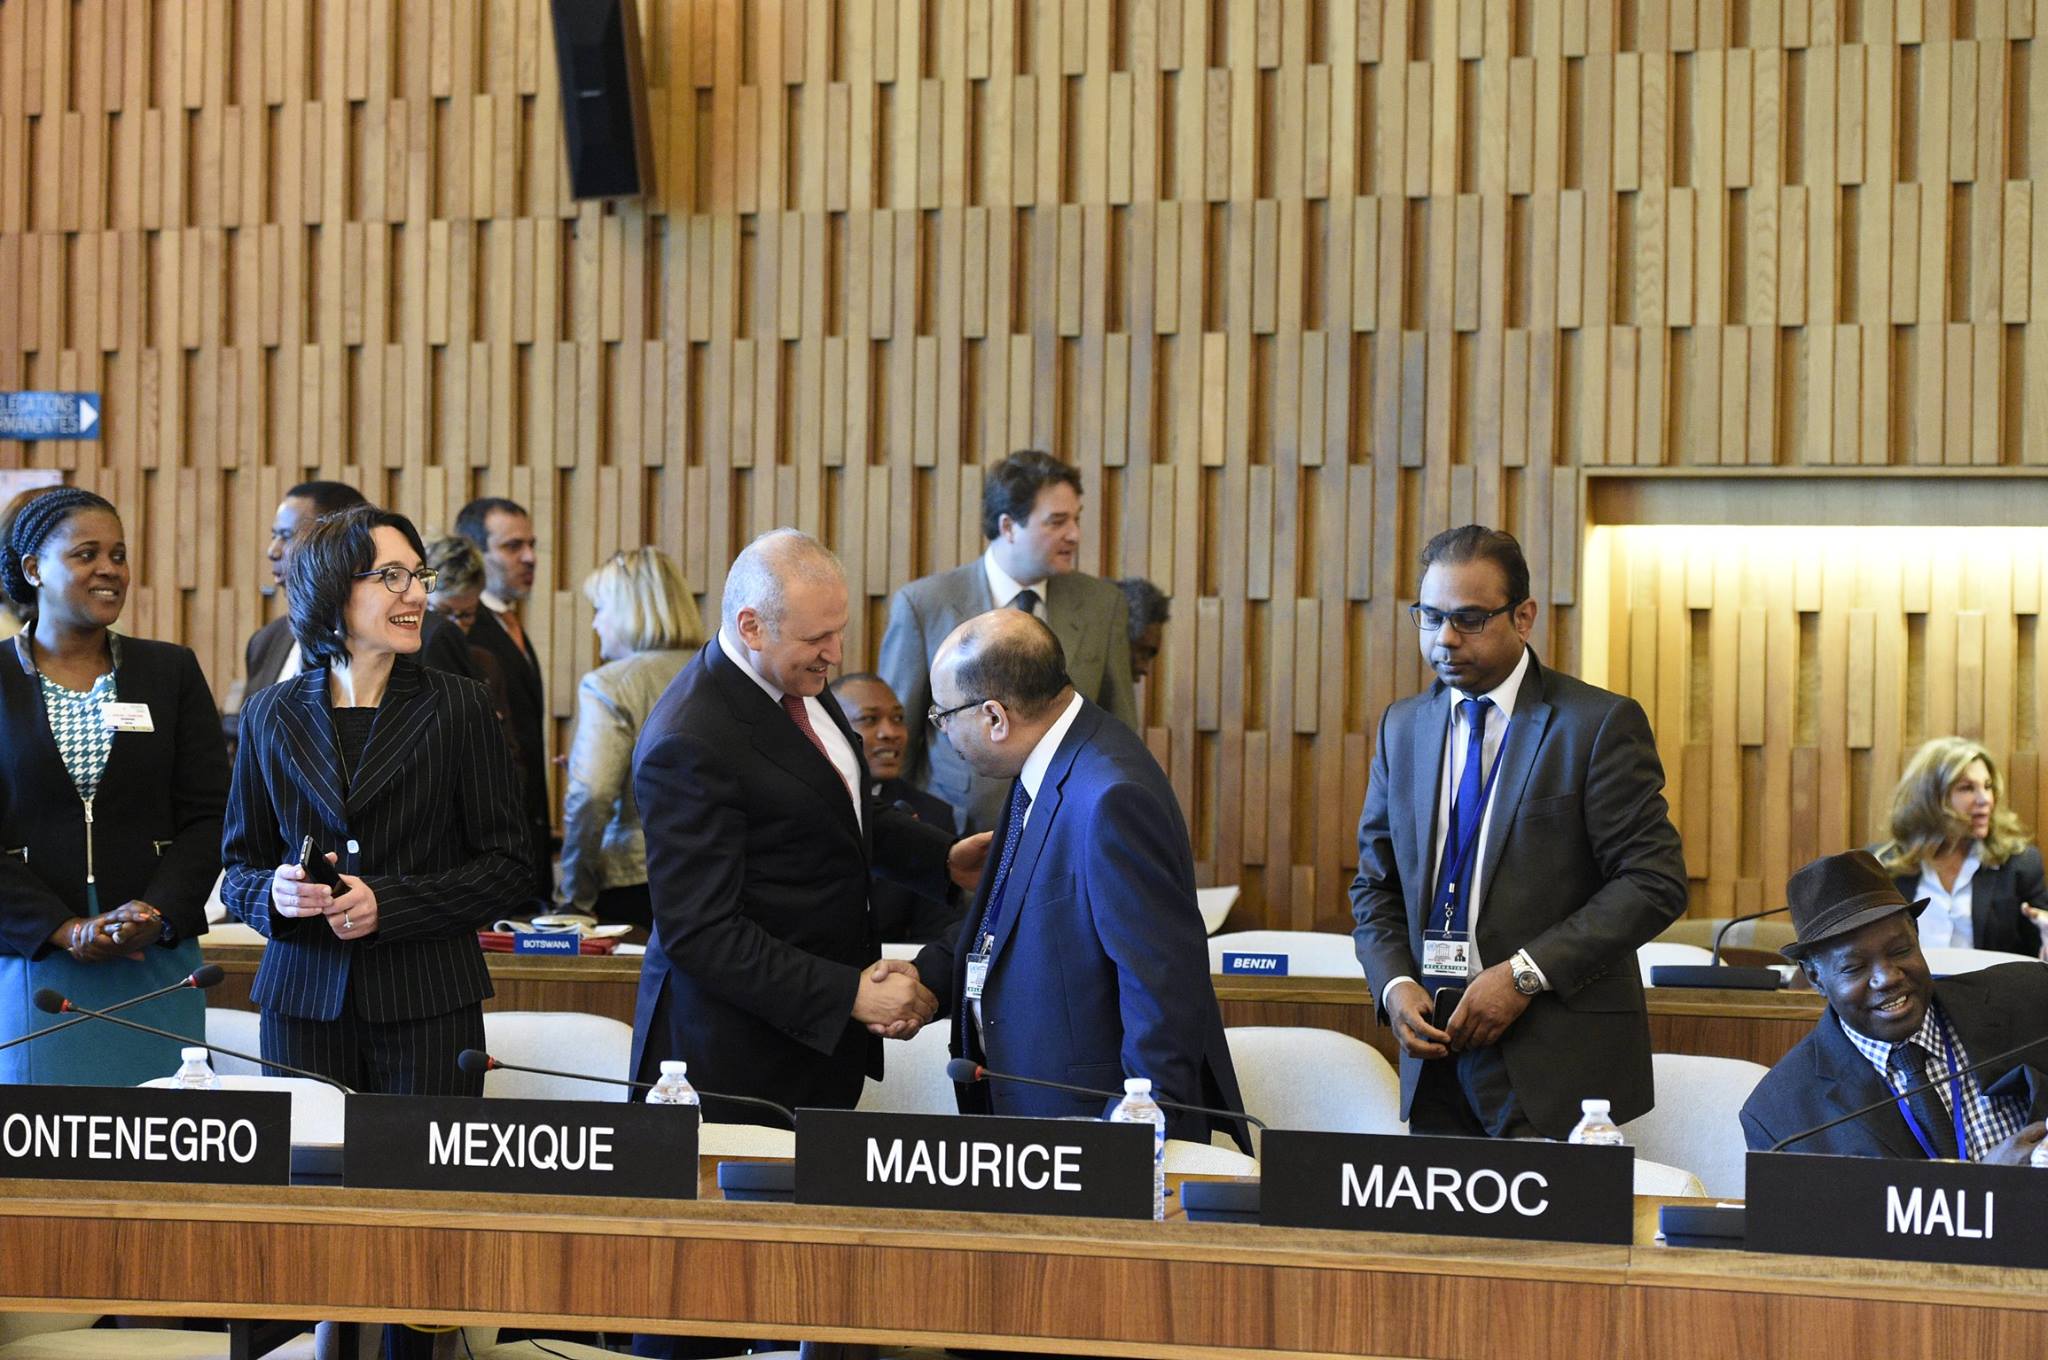 UNESCO Executive Board Meeting 22 